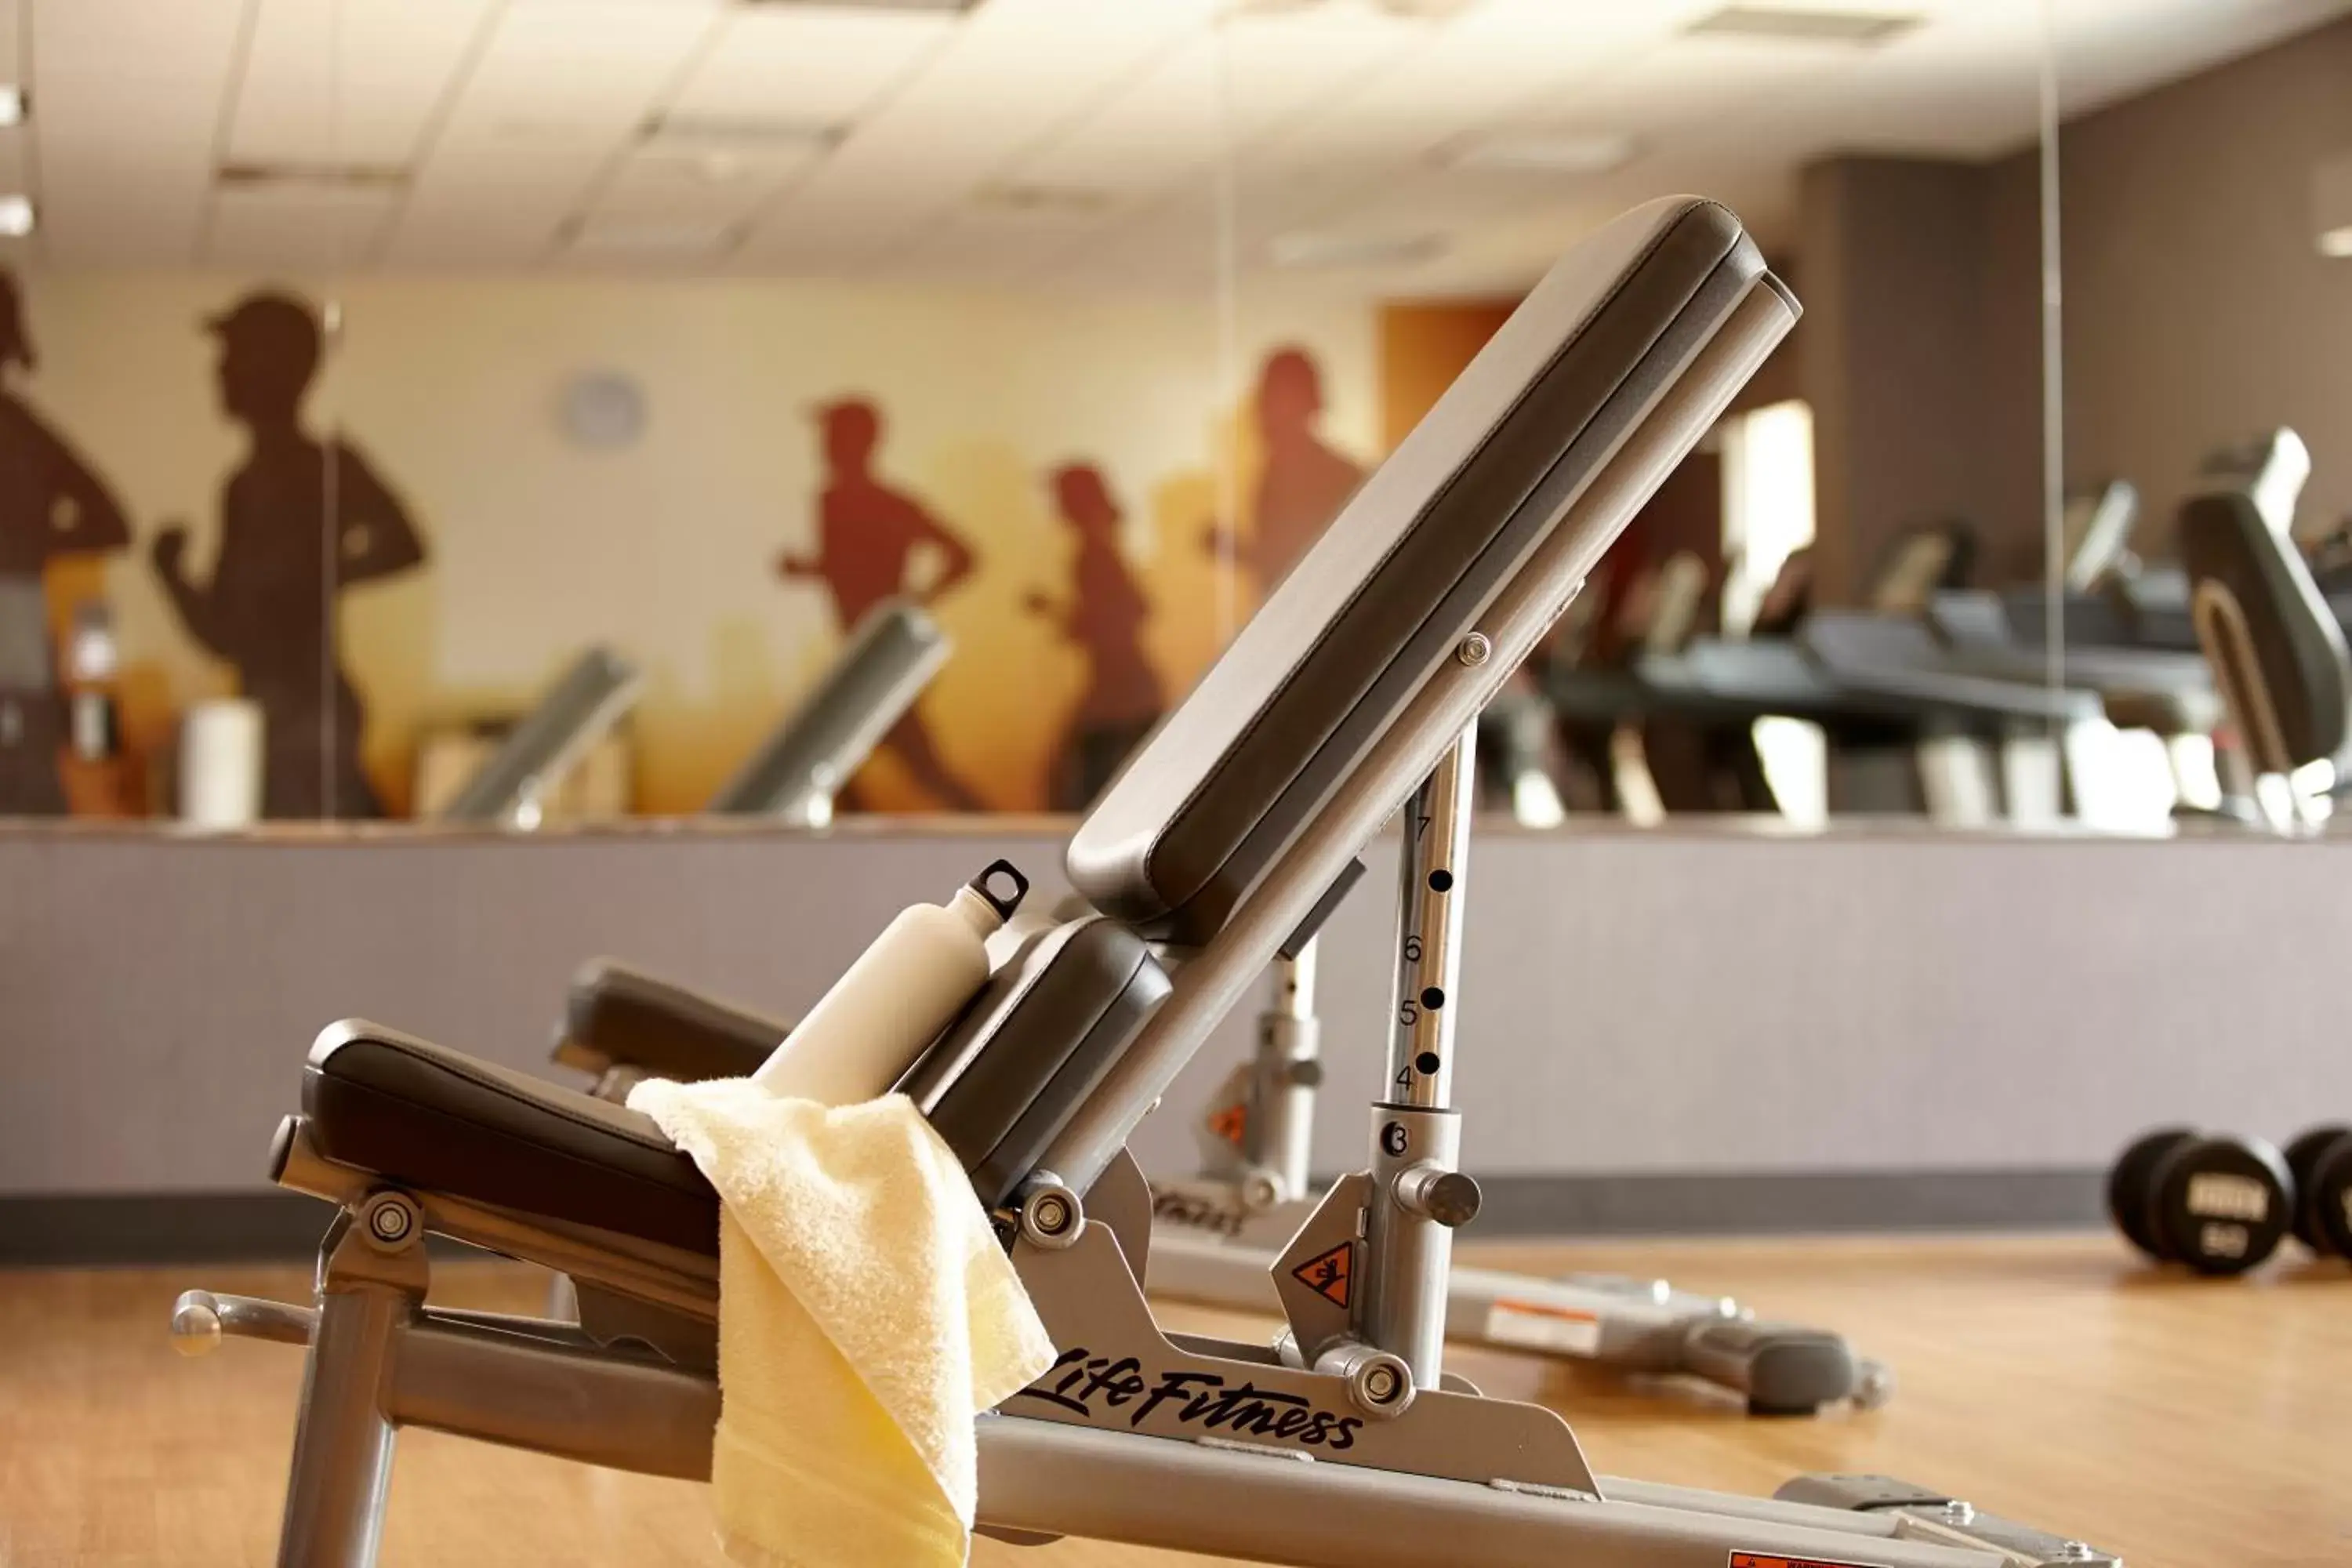 Fitness centre/facilities, Fitness Center/Facilities in Hyatt House Portland/Beaverton